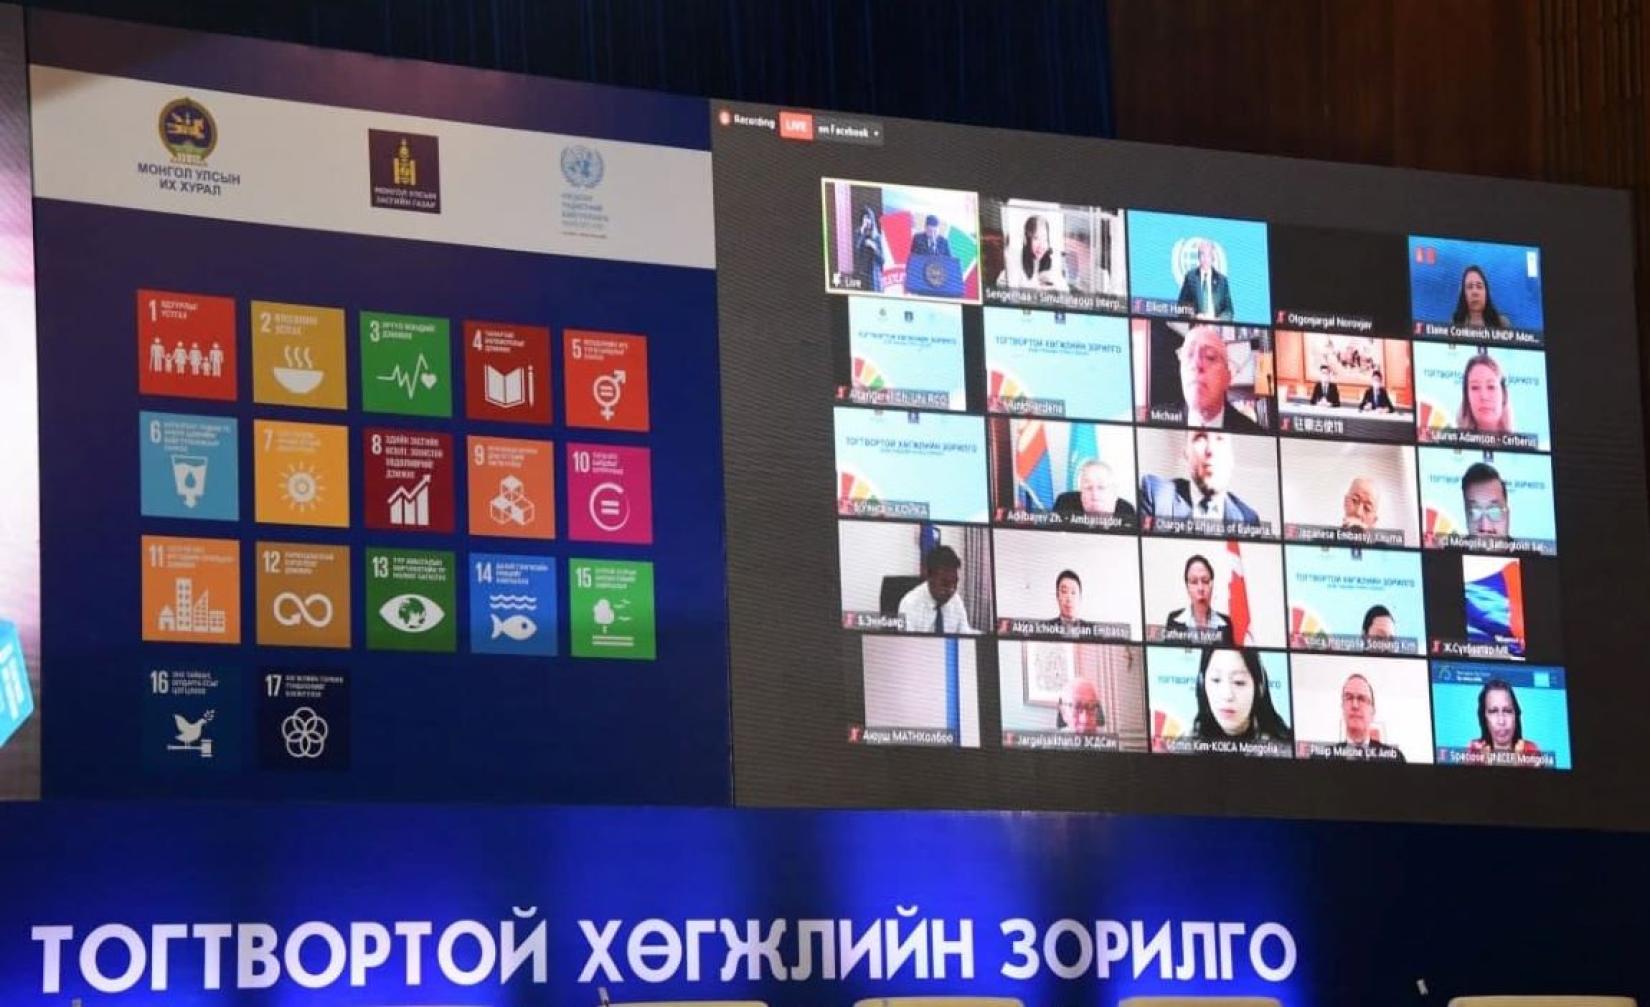 High-level forum on SDGs in Mongolia